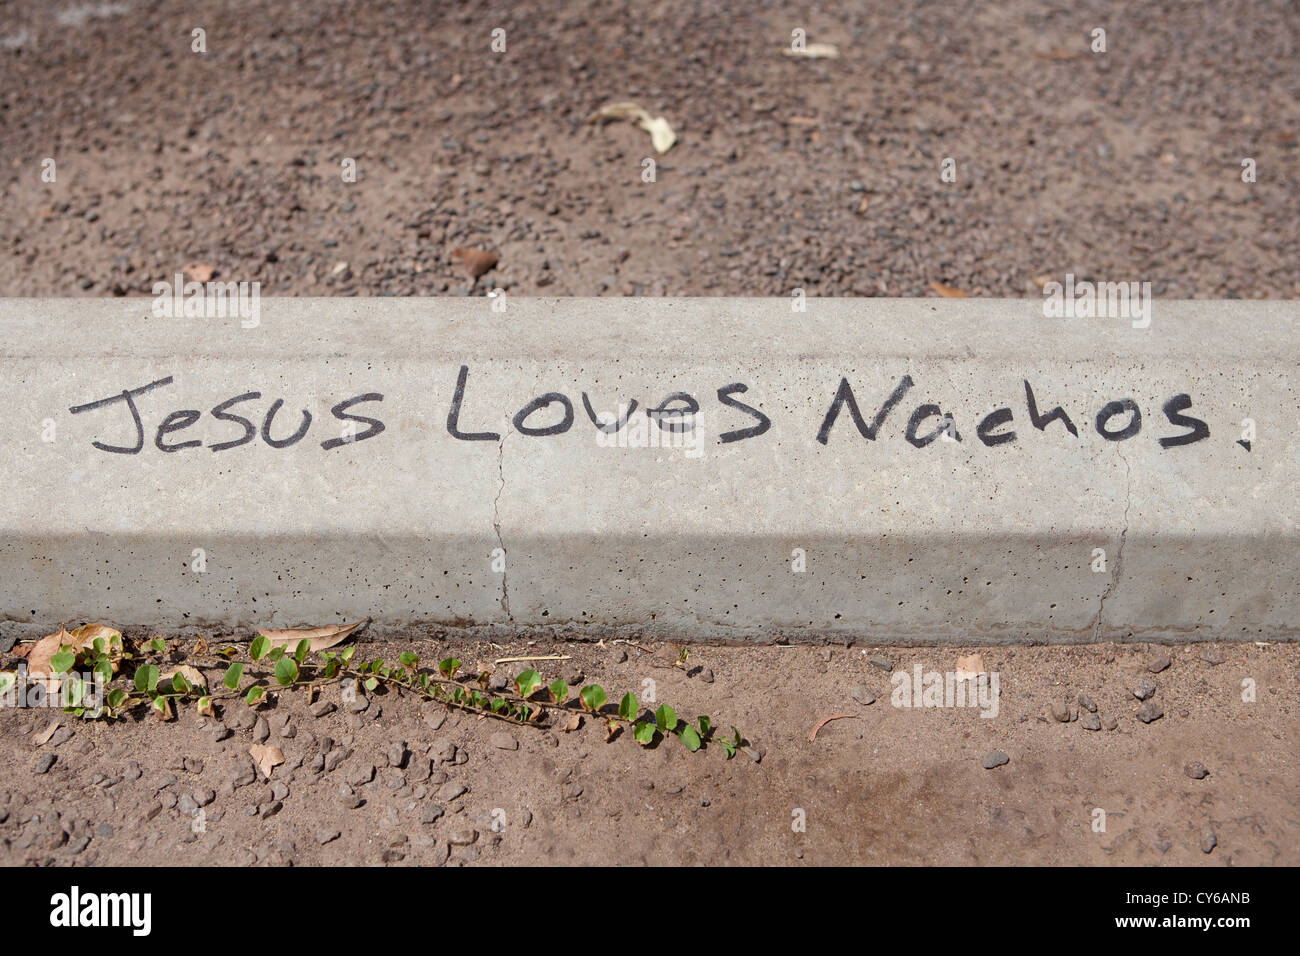 Jesus liebt Nachos Graffiti auf einem Betonblock Stockfoto